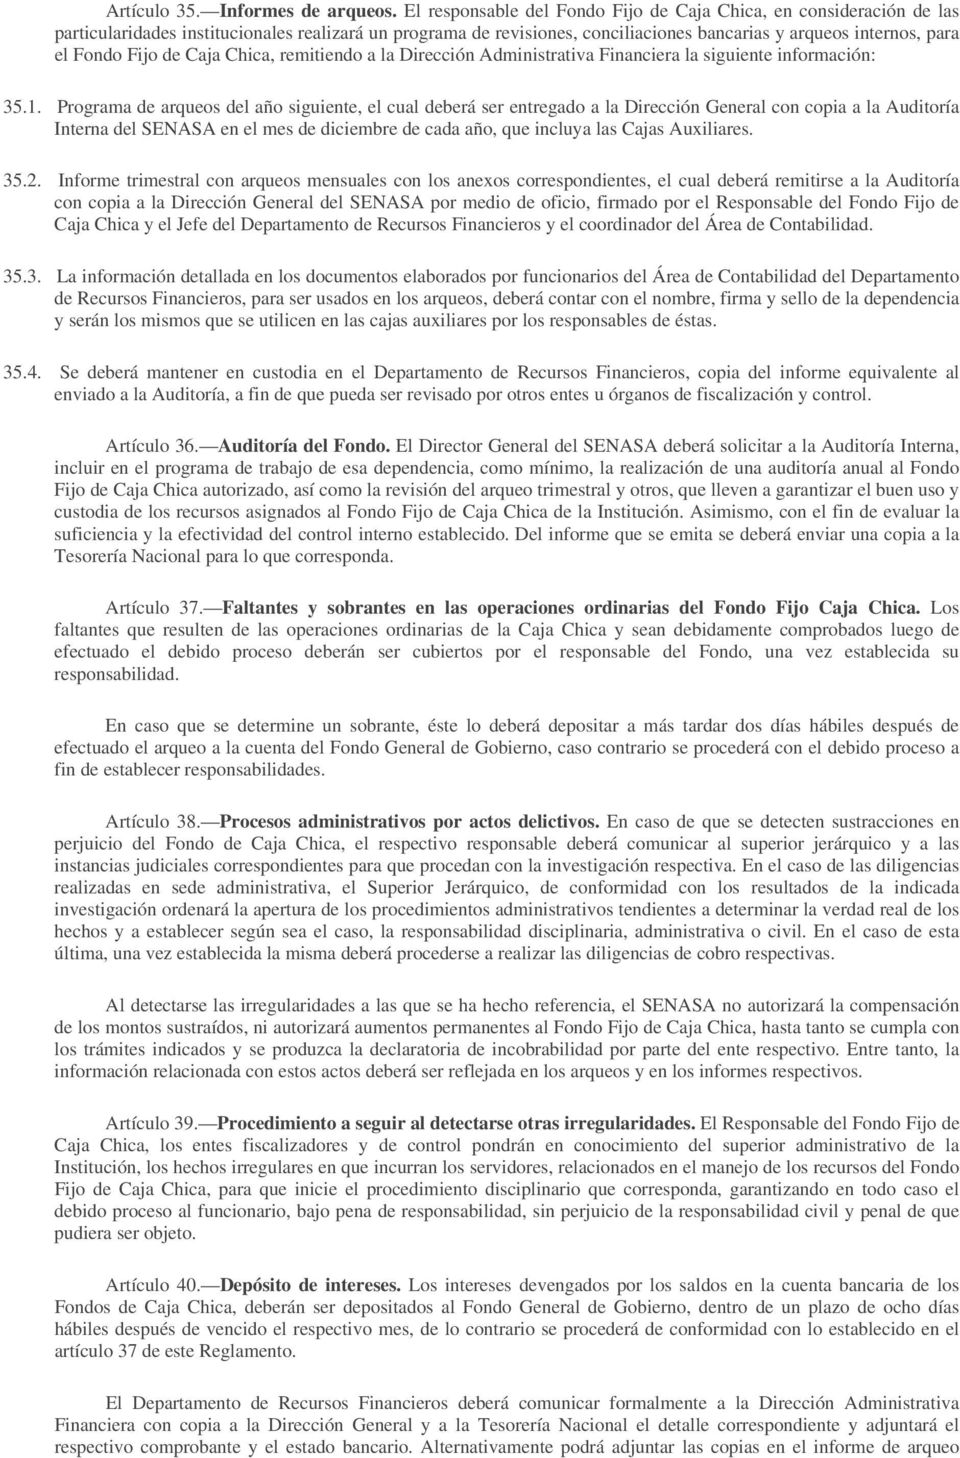 Fijo de Caja Chica, remitiendo a la Dirección Administrativa Financiera la siguiente información: 35.1.